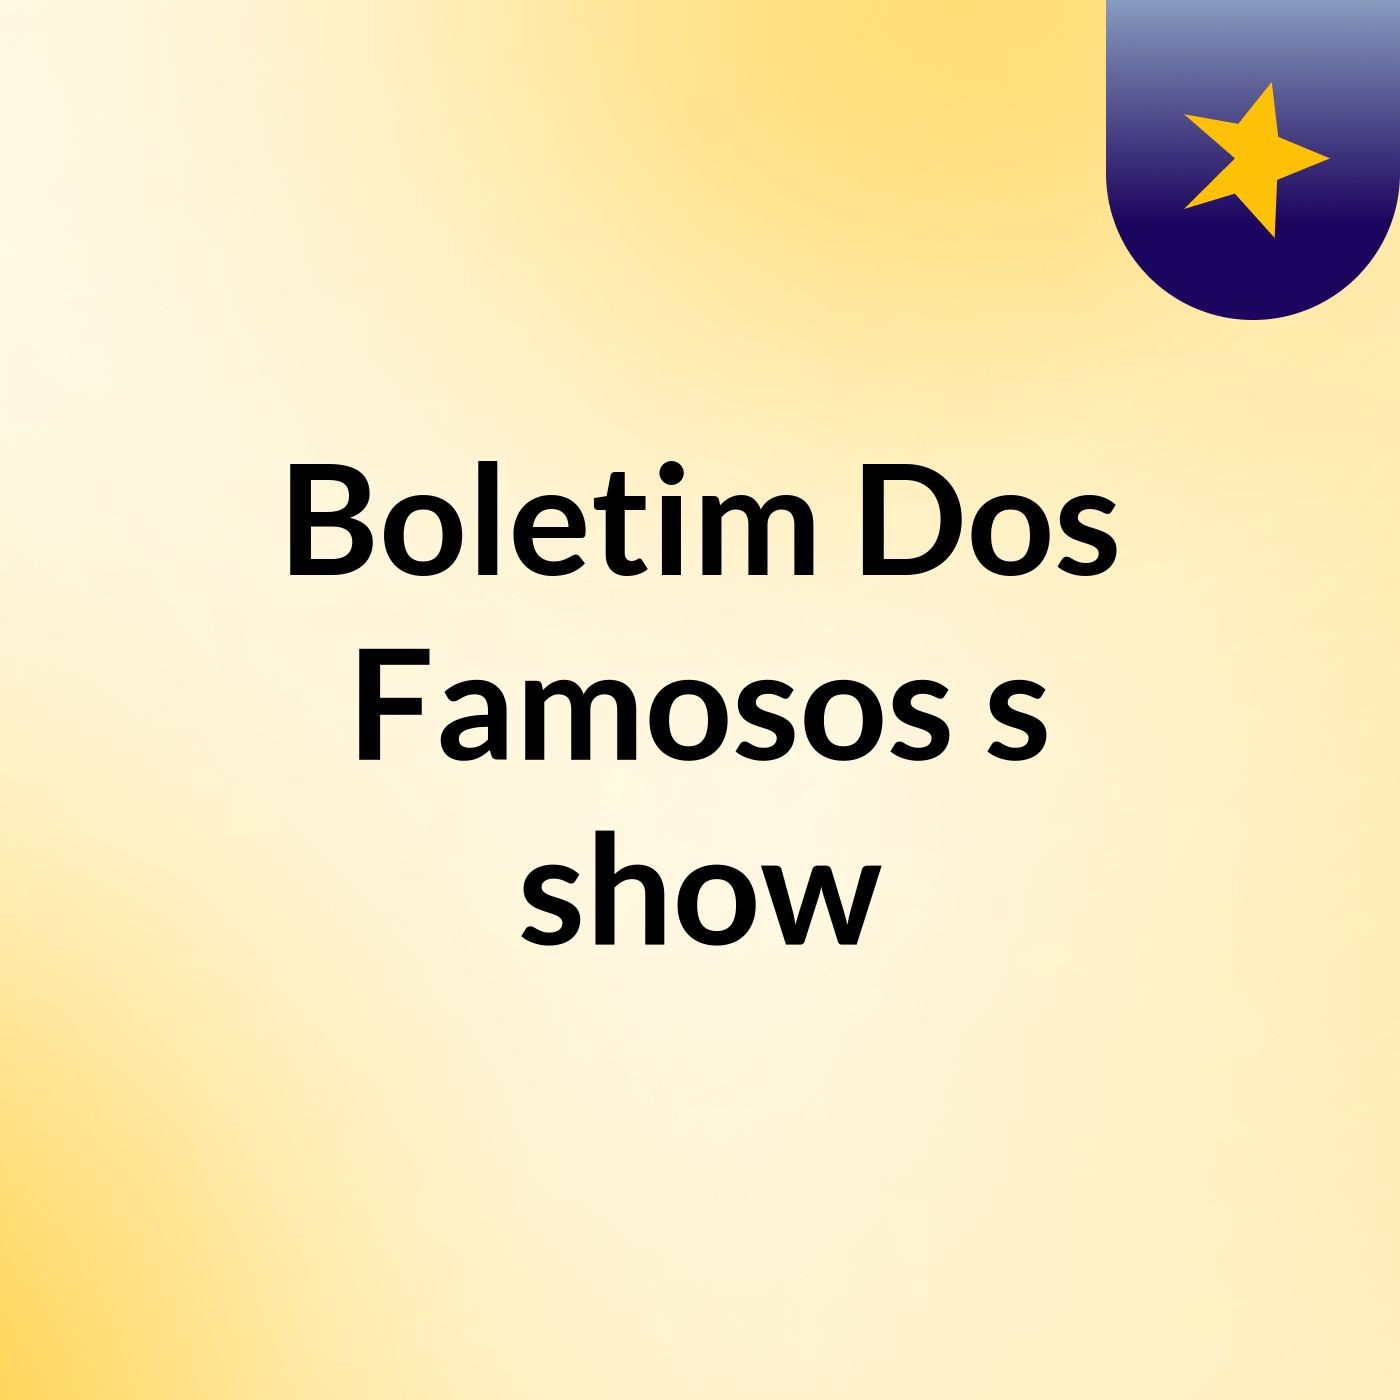 Boletim Dos Famosos's show